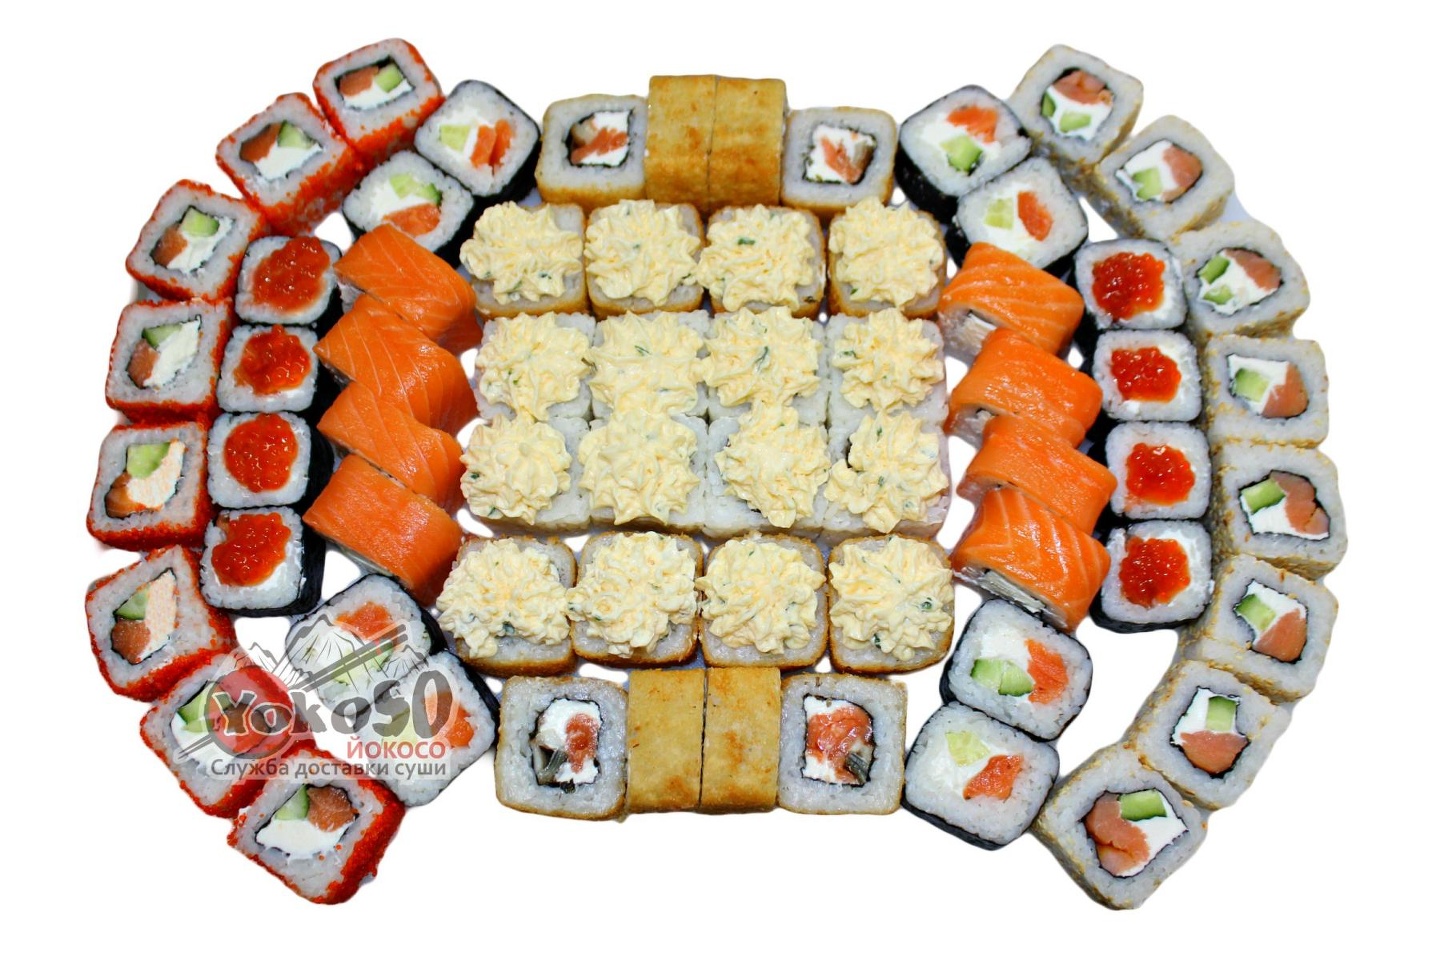 Заказать суши в якутске с доставкой на дом недорого фото 51